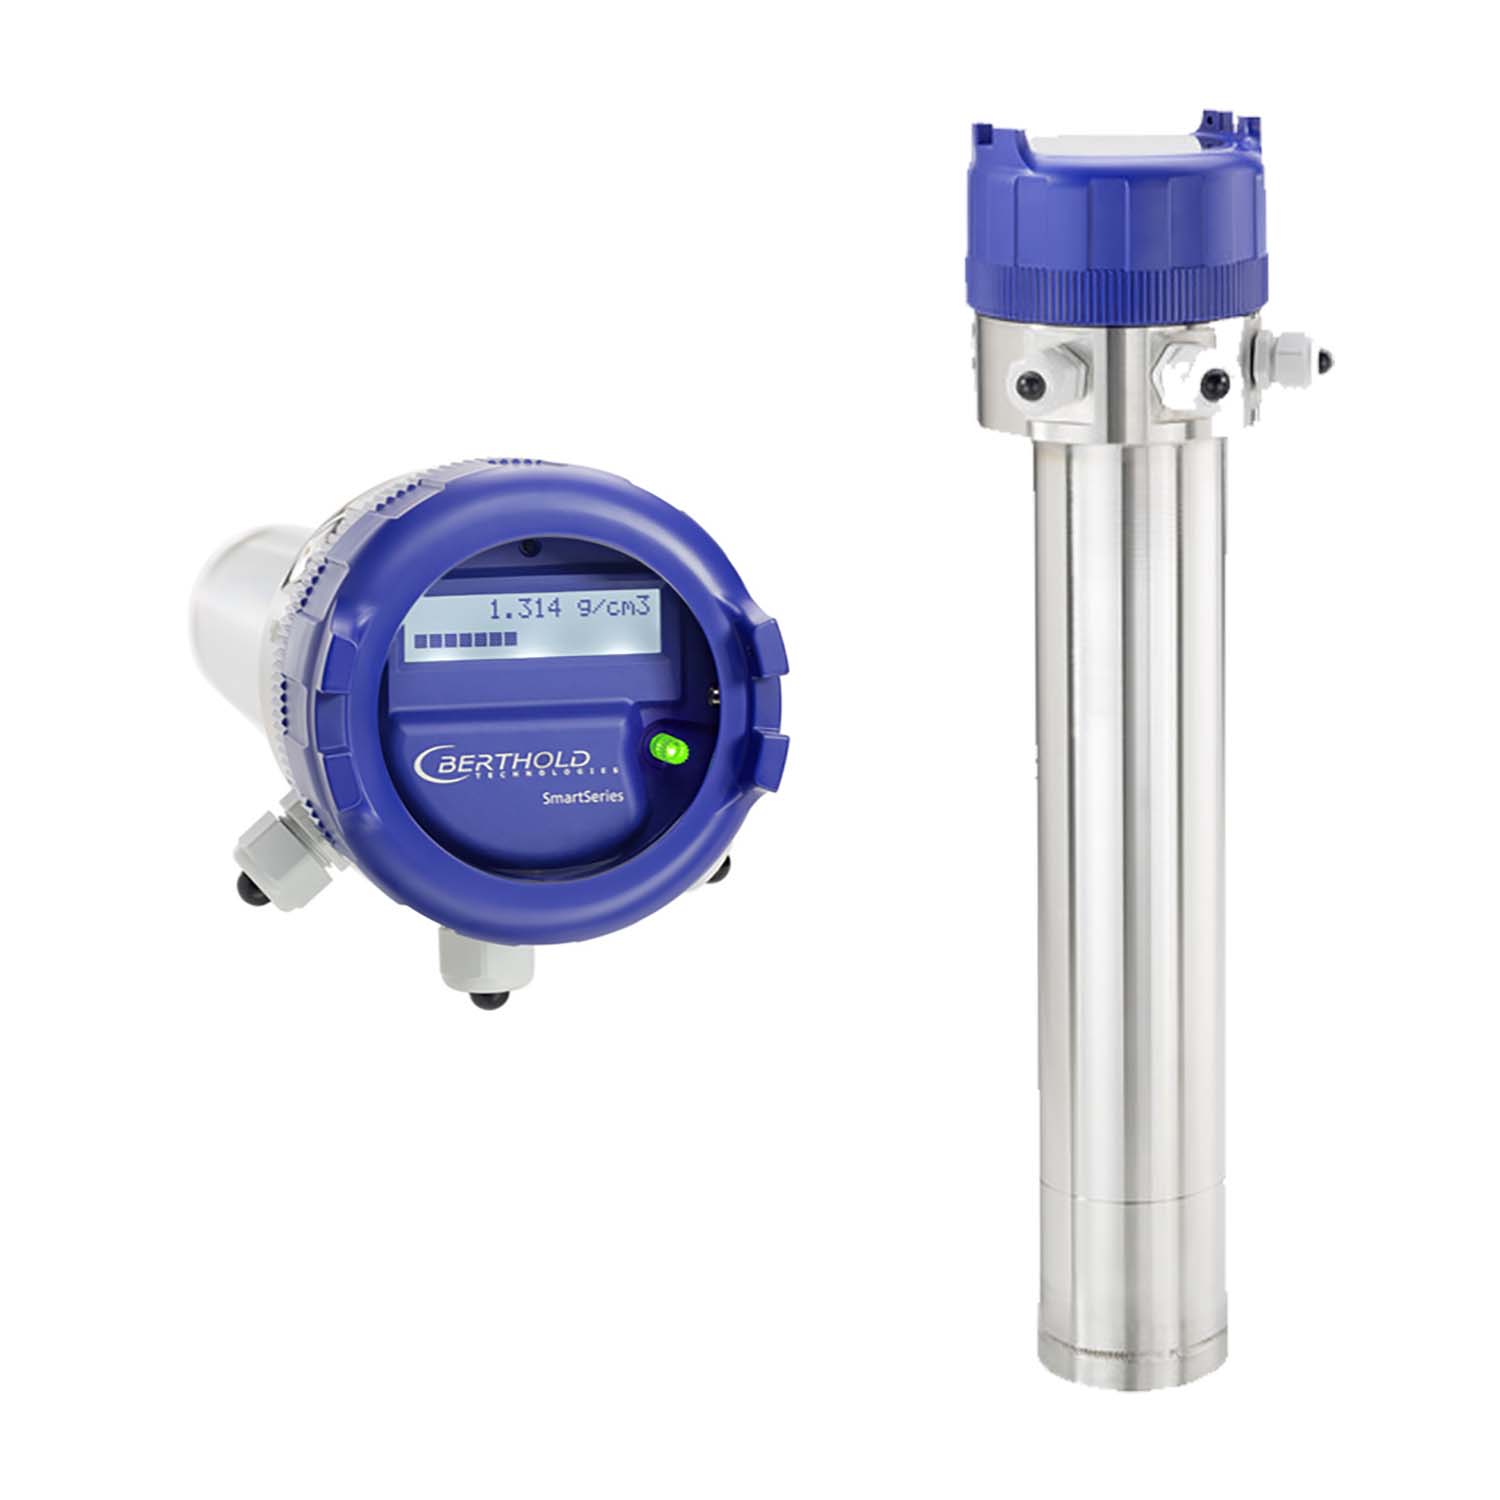 LB 414 | Detector y medidor de densidad y concentración para líquidos, pulpas y lodos